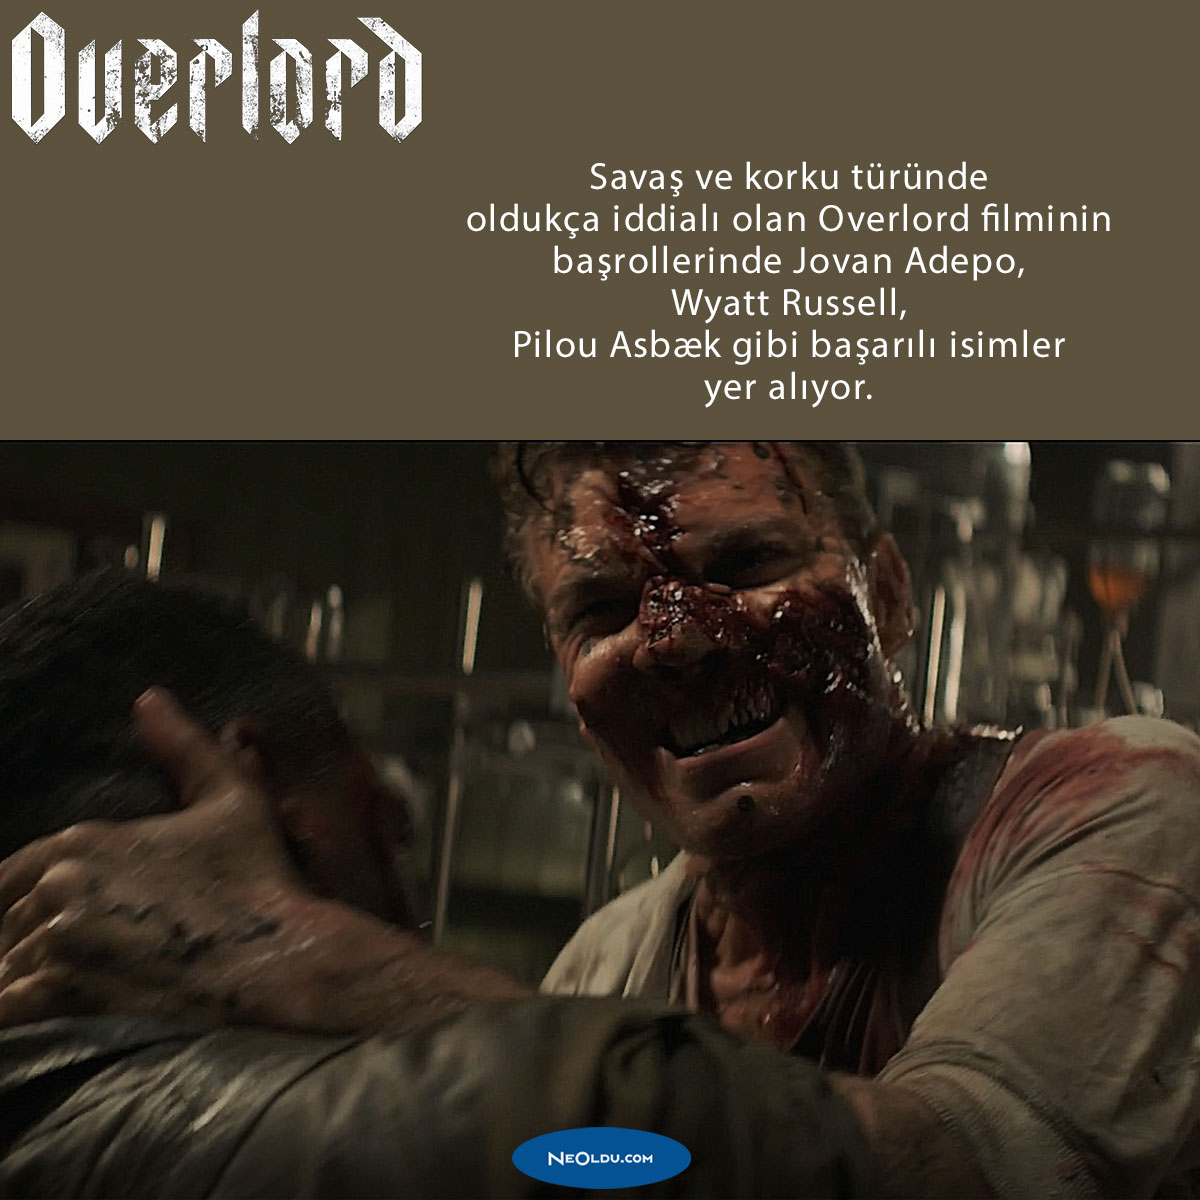 overlord-filmi-hakkinda-bilgi.jpg